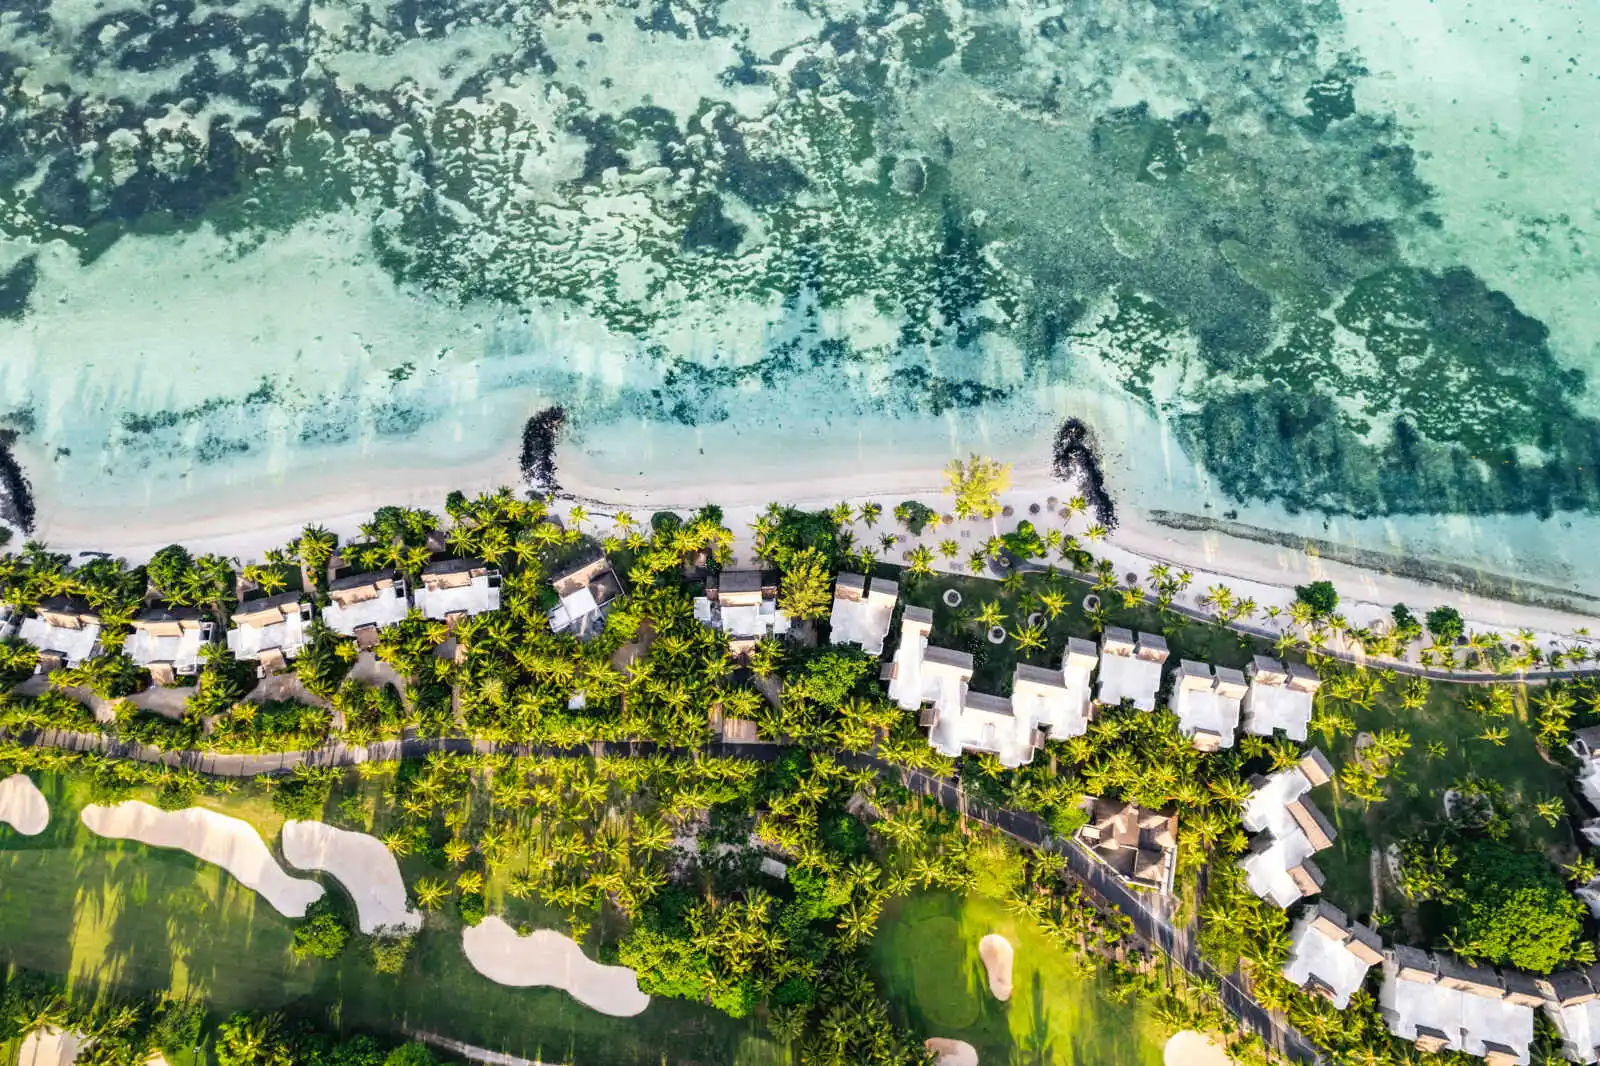 Vue aérienne de l'hôtel, hôtel Paradis Beachcomber Golf Resort & Spa, Le Morne, île Maurice